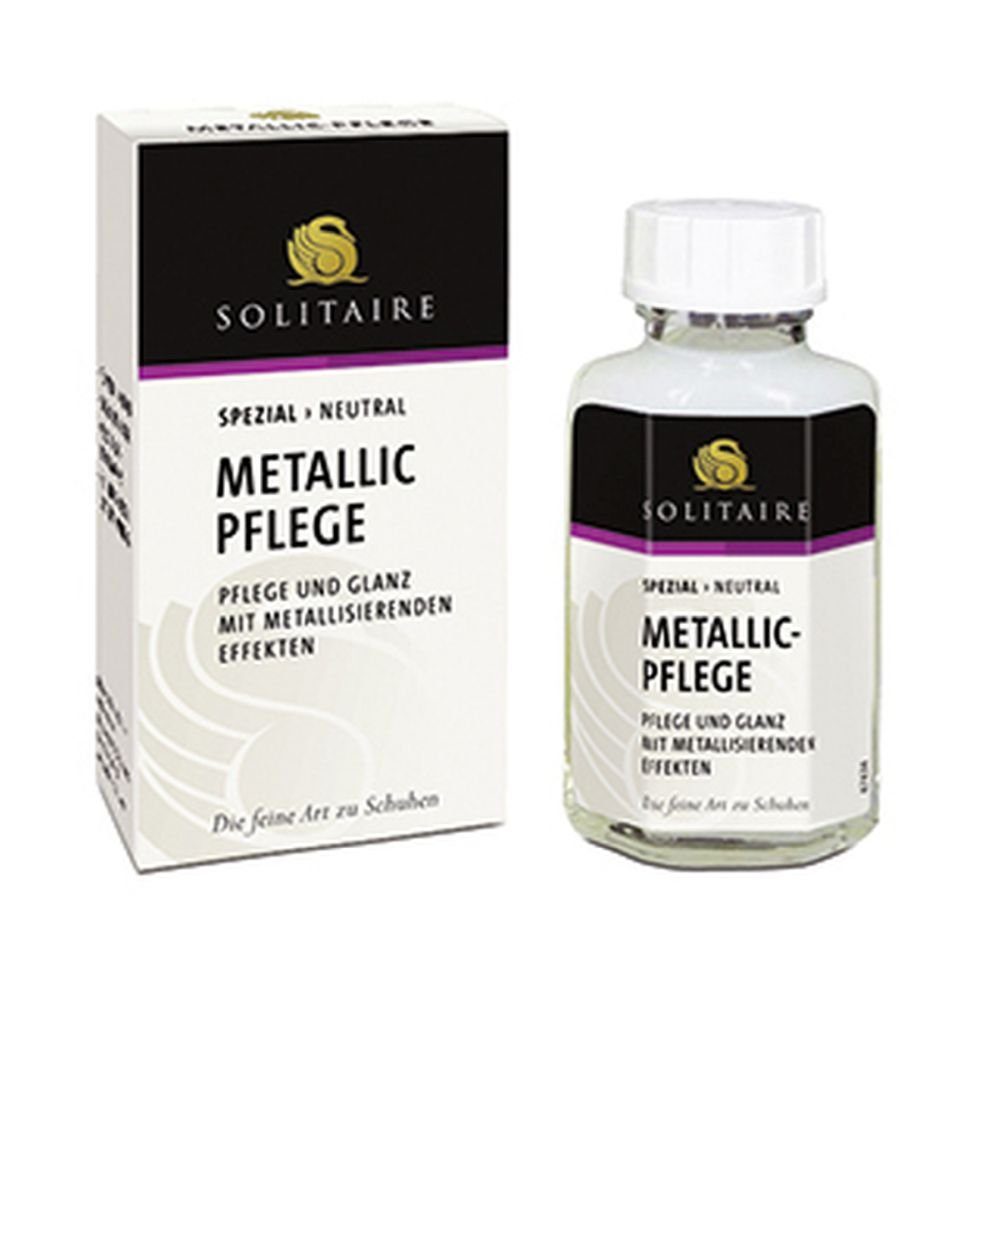 Solitaire Metallic Pflege - für alle Leder mit metallisierenden Effekten Lederpflege